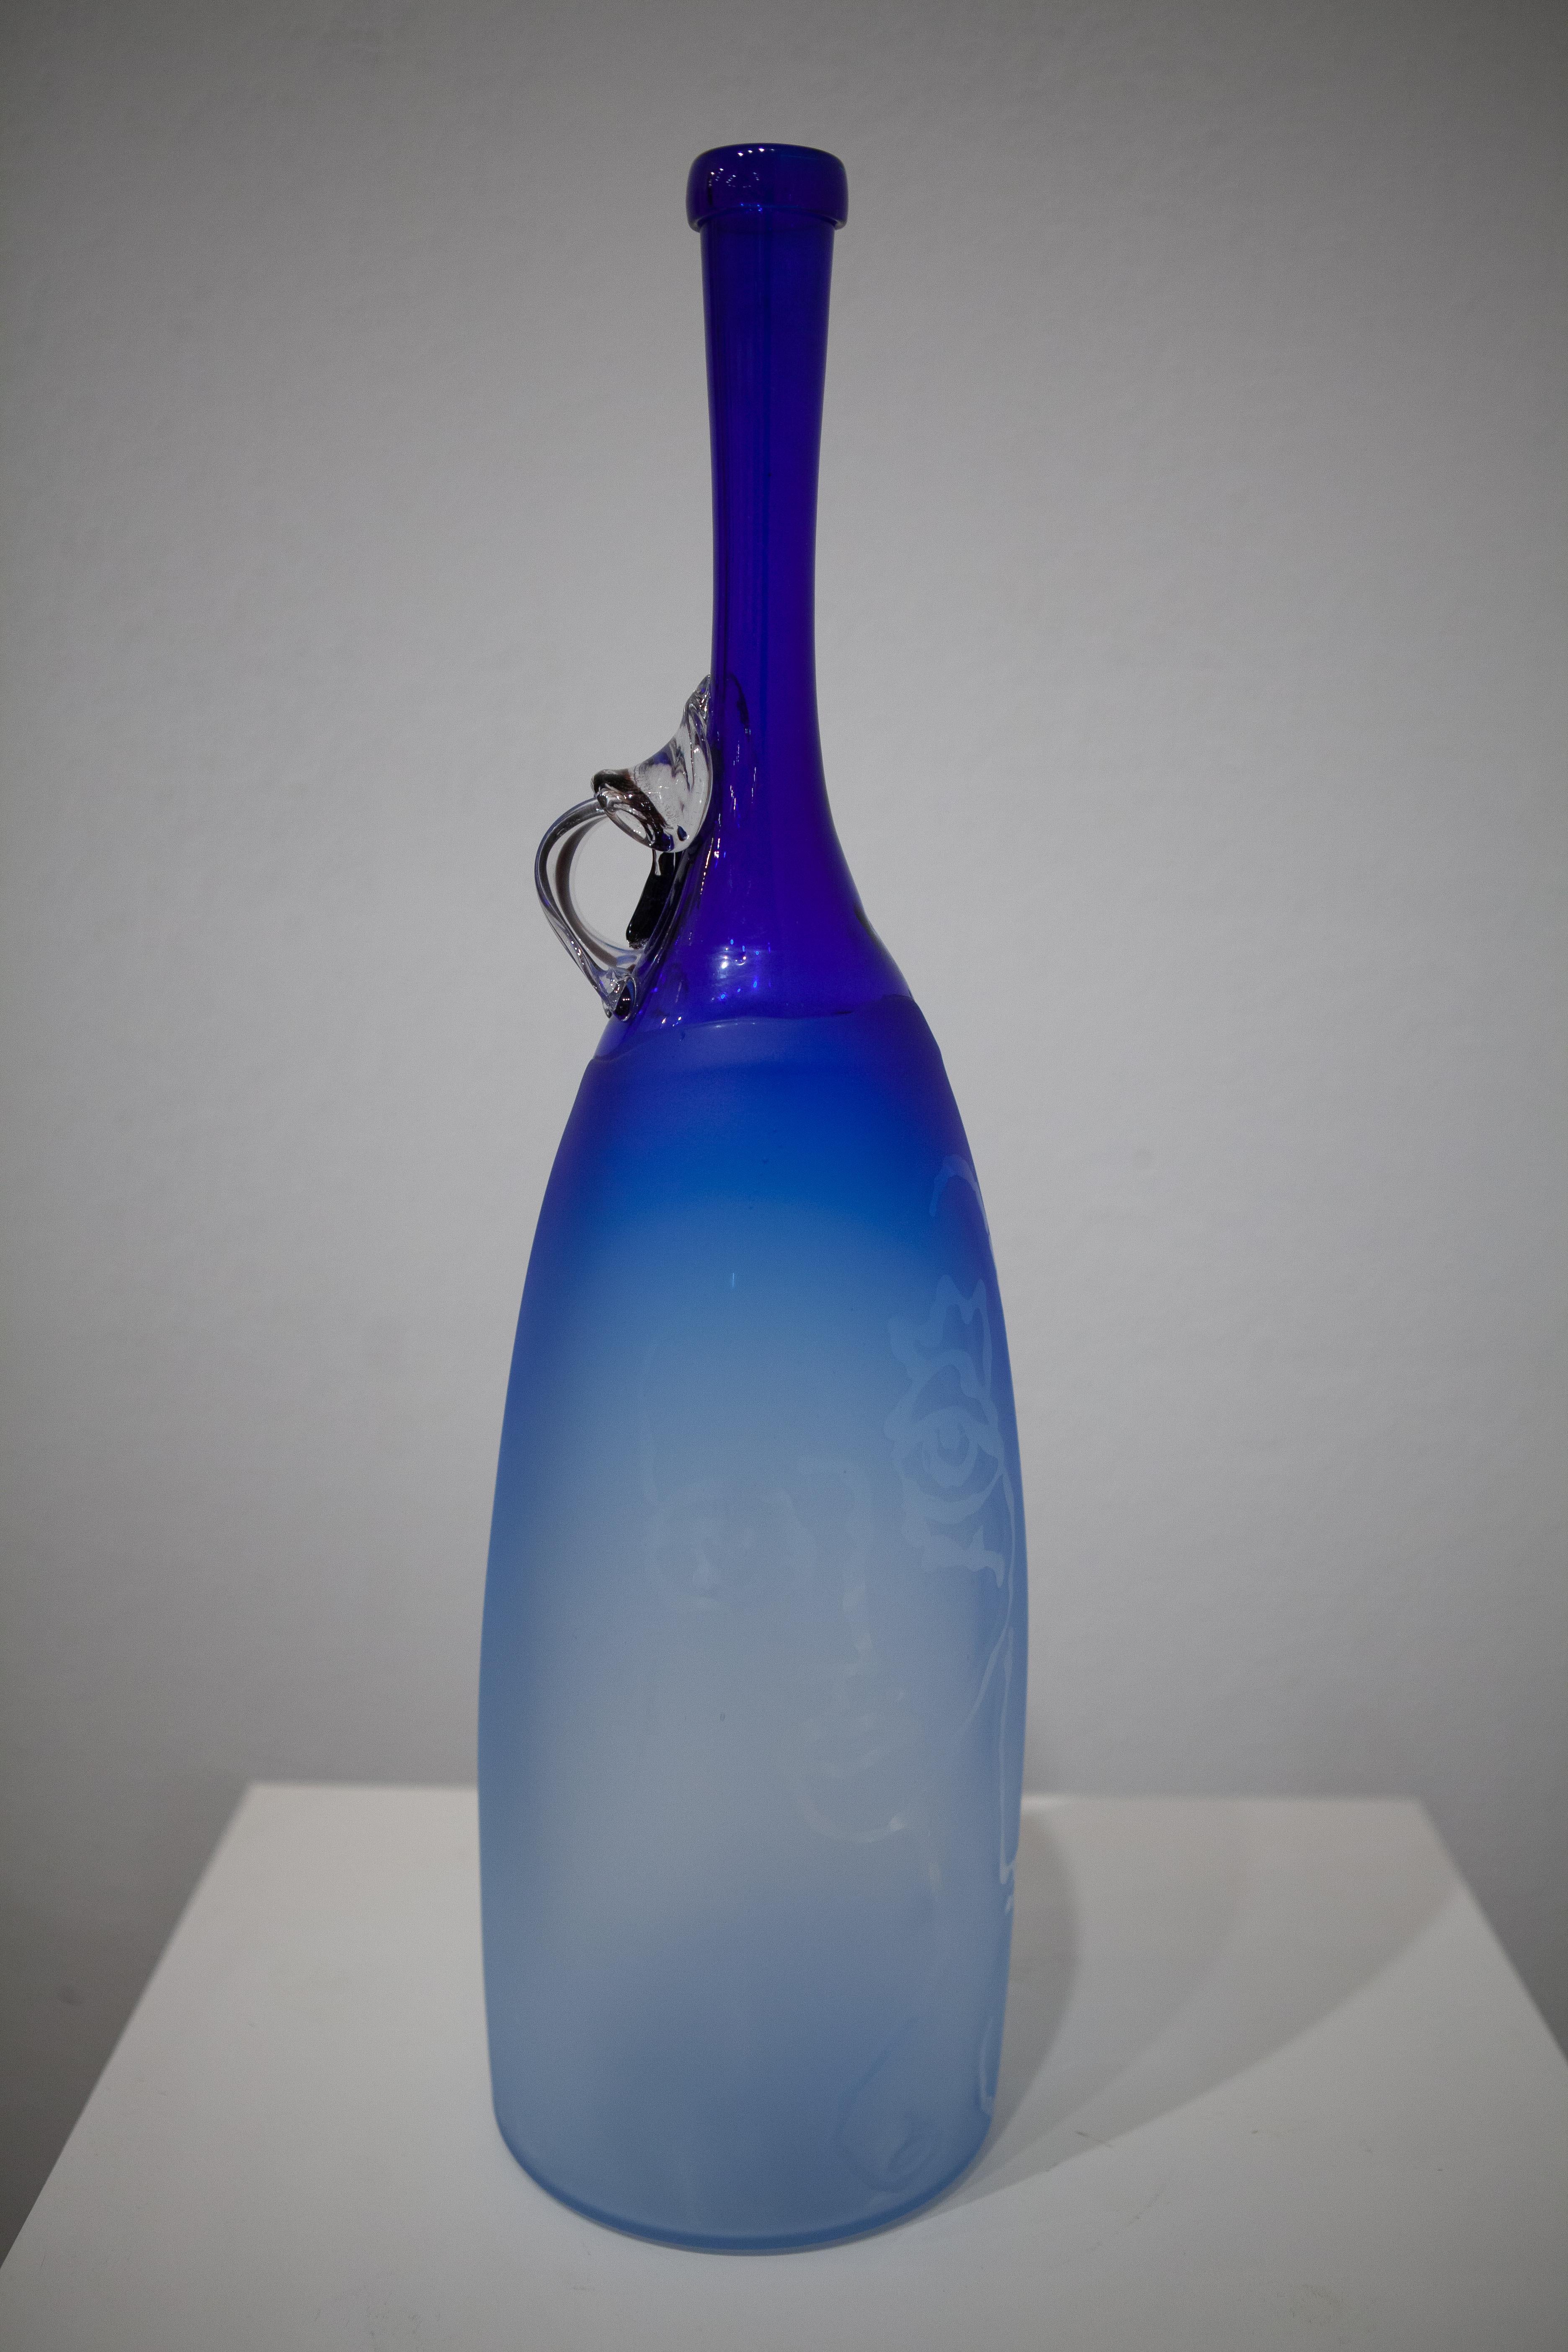 Muse Vase (blown glass design craft cobalt blue sleek table top sculpture object - Mixed Media Art by Robert Burch